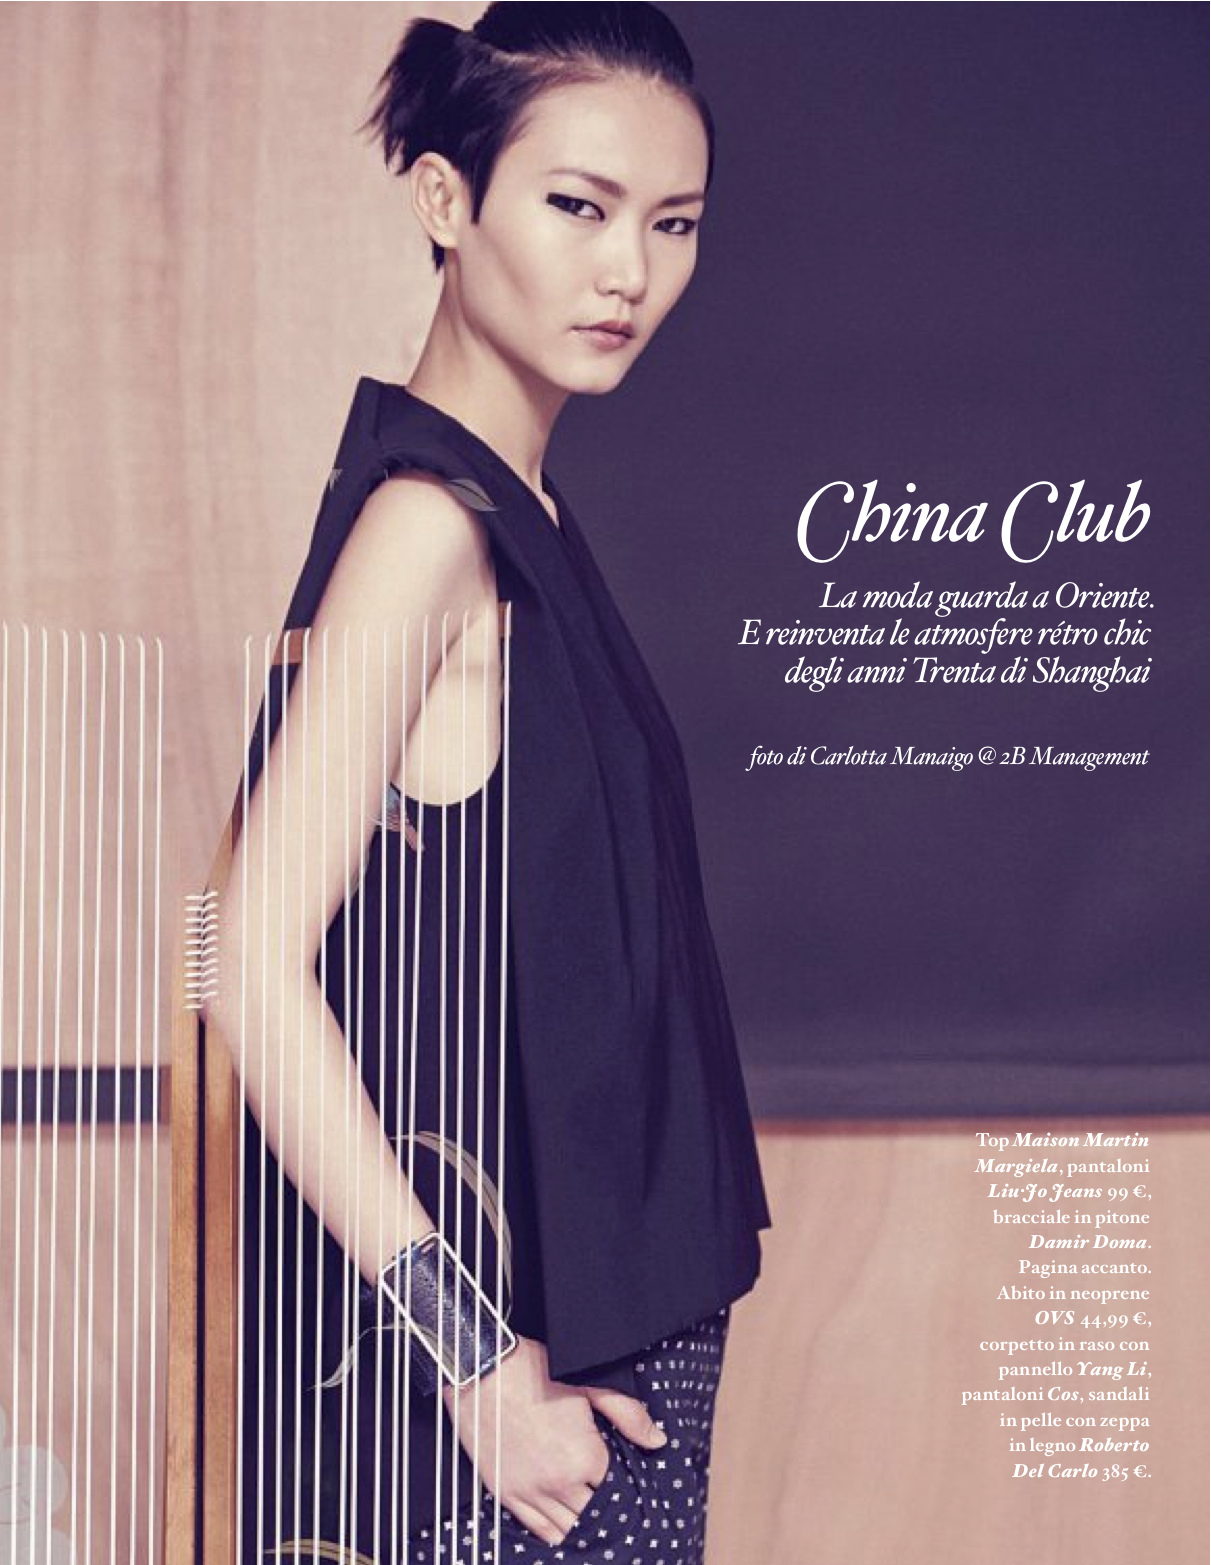 IO Donna March 2013 “China Club” | Carlotta Manaigo | IO donna | Hannes Hetta | Numerique Retouch Photo Retouching Studio